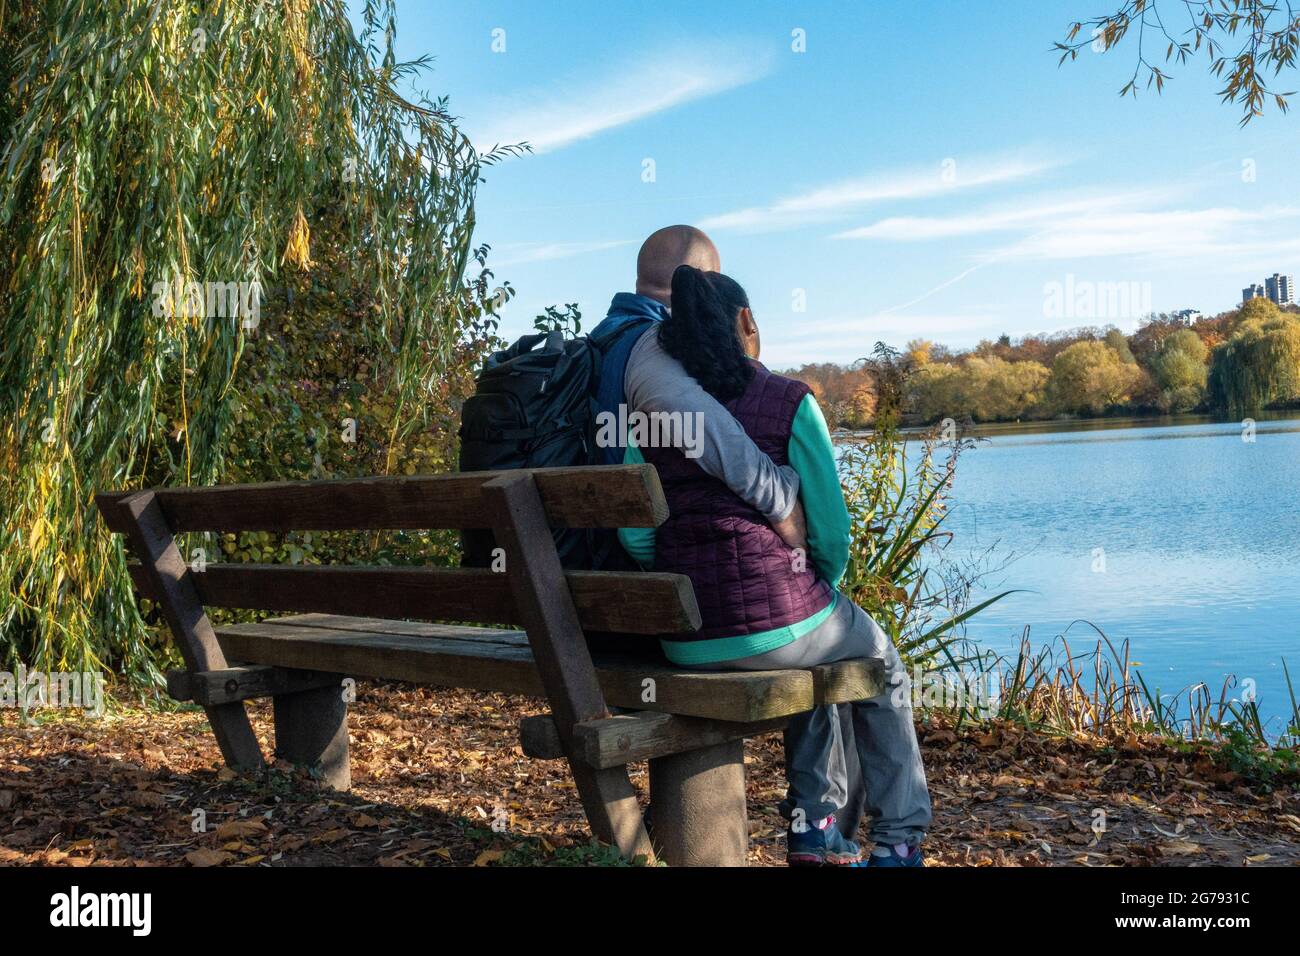 Europa, Deutschland, Baden-Württemberg, Stuttgart, Paar sitzt auf einer Bank und blickt auf den herbstlichen Max-Eyth-See Stockfoto